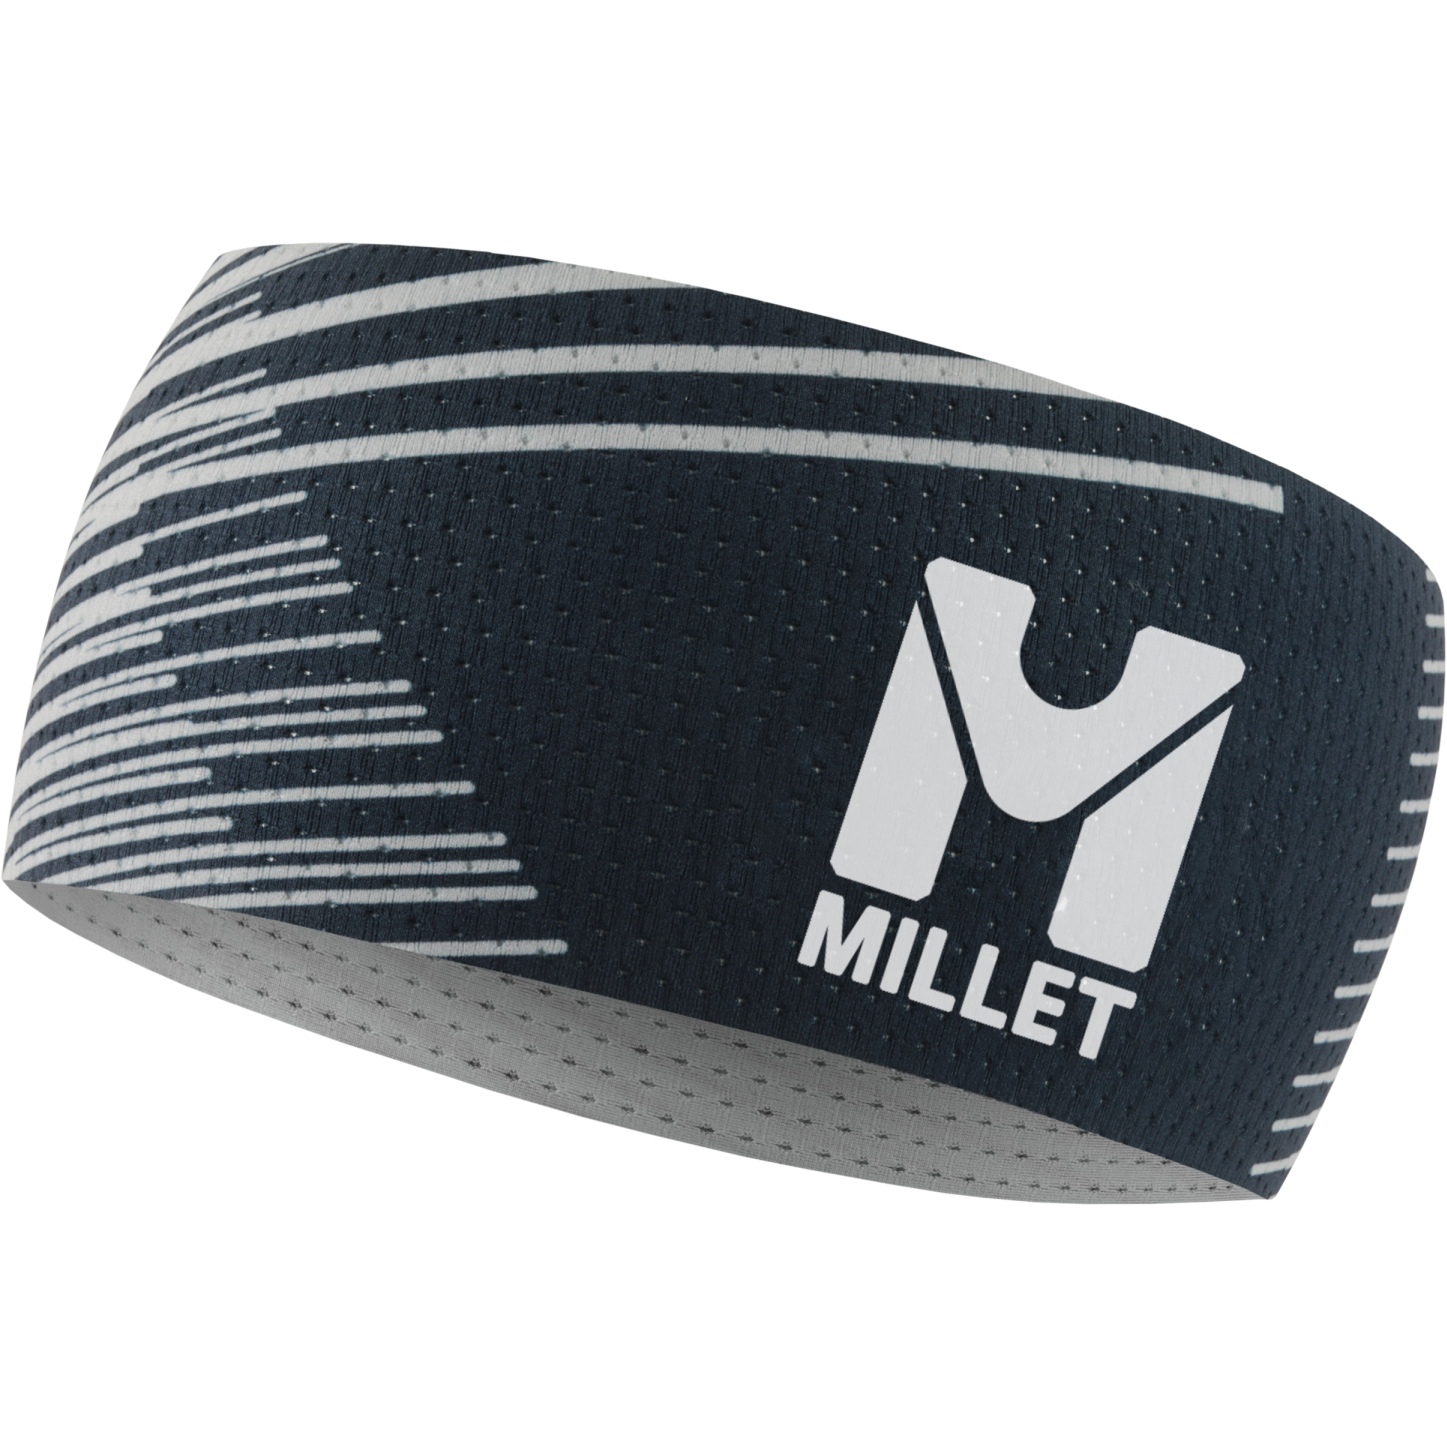 Produktbild von Millet Intense Stirnband - Saphir N7317